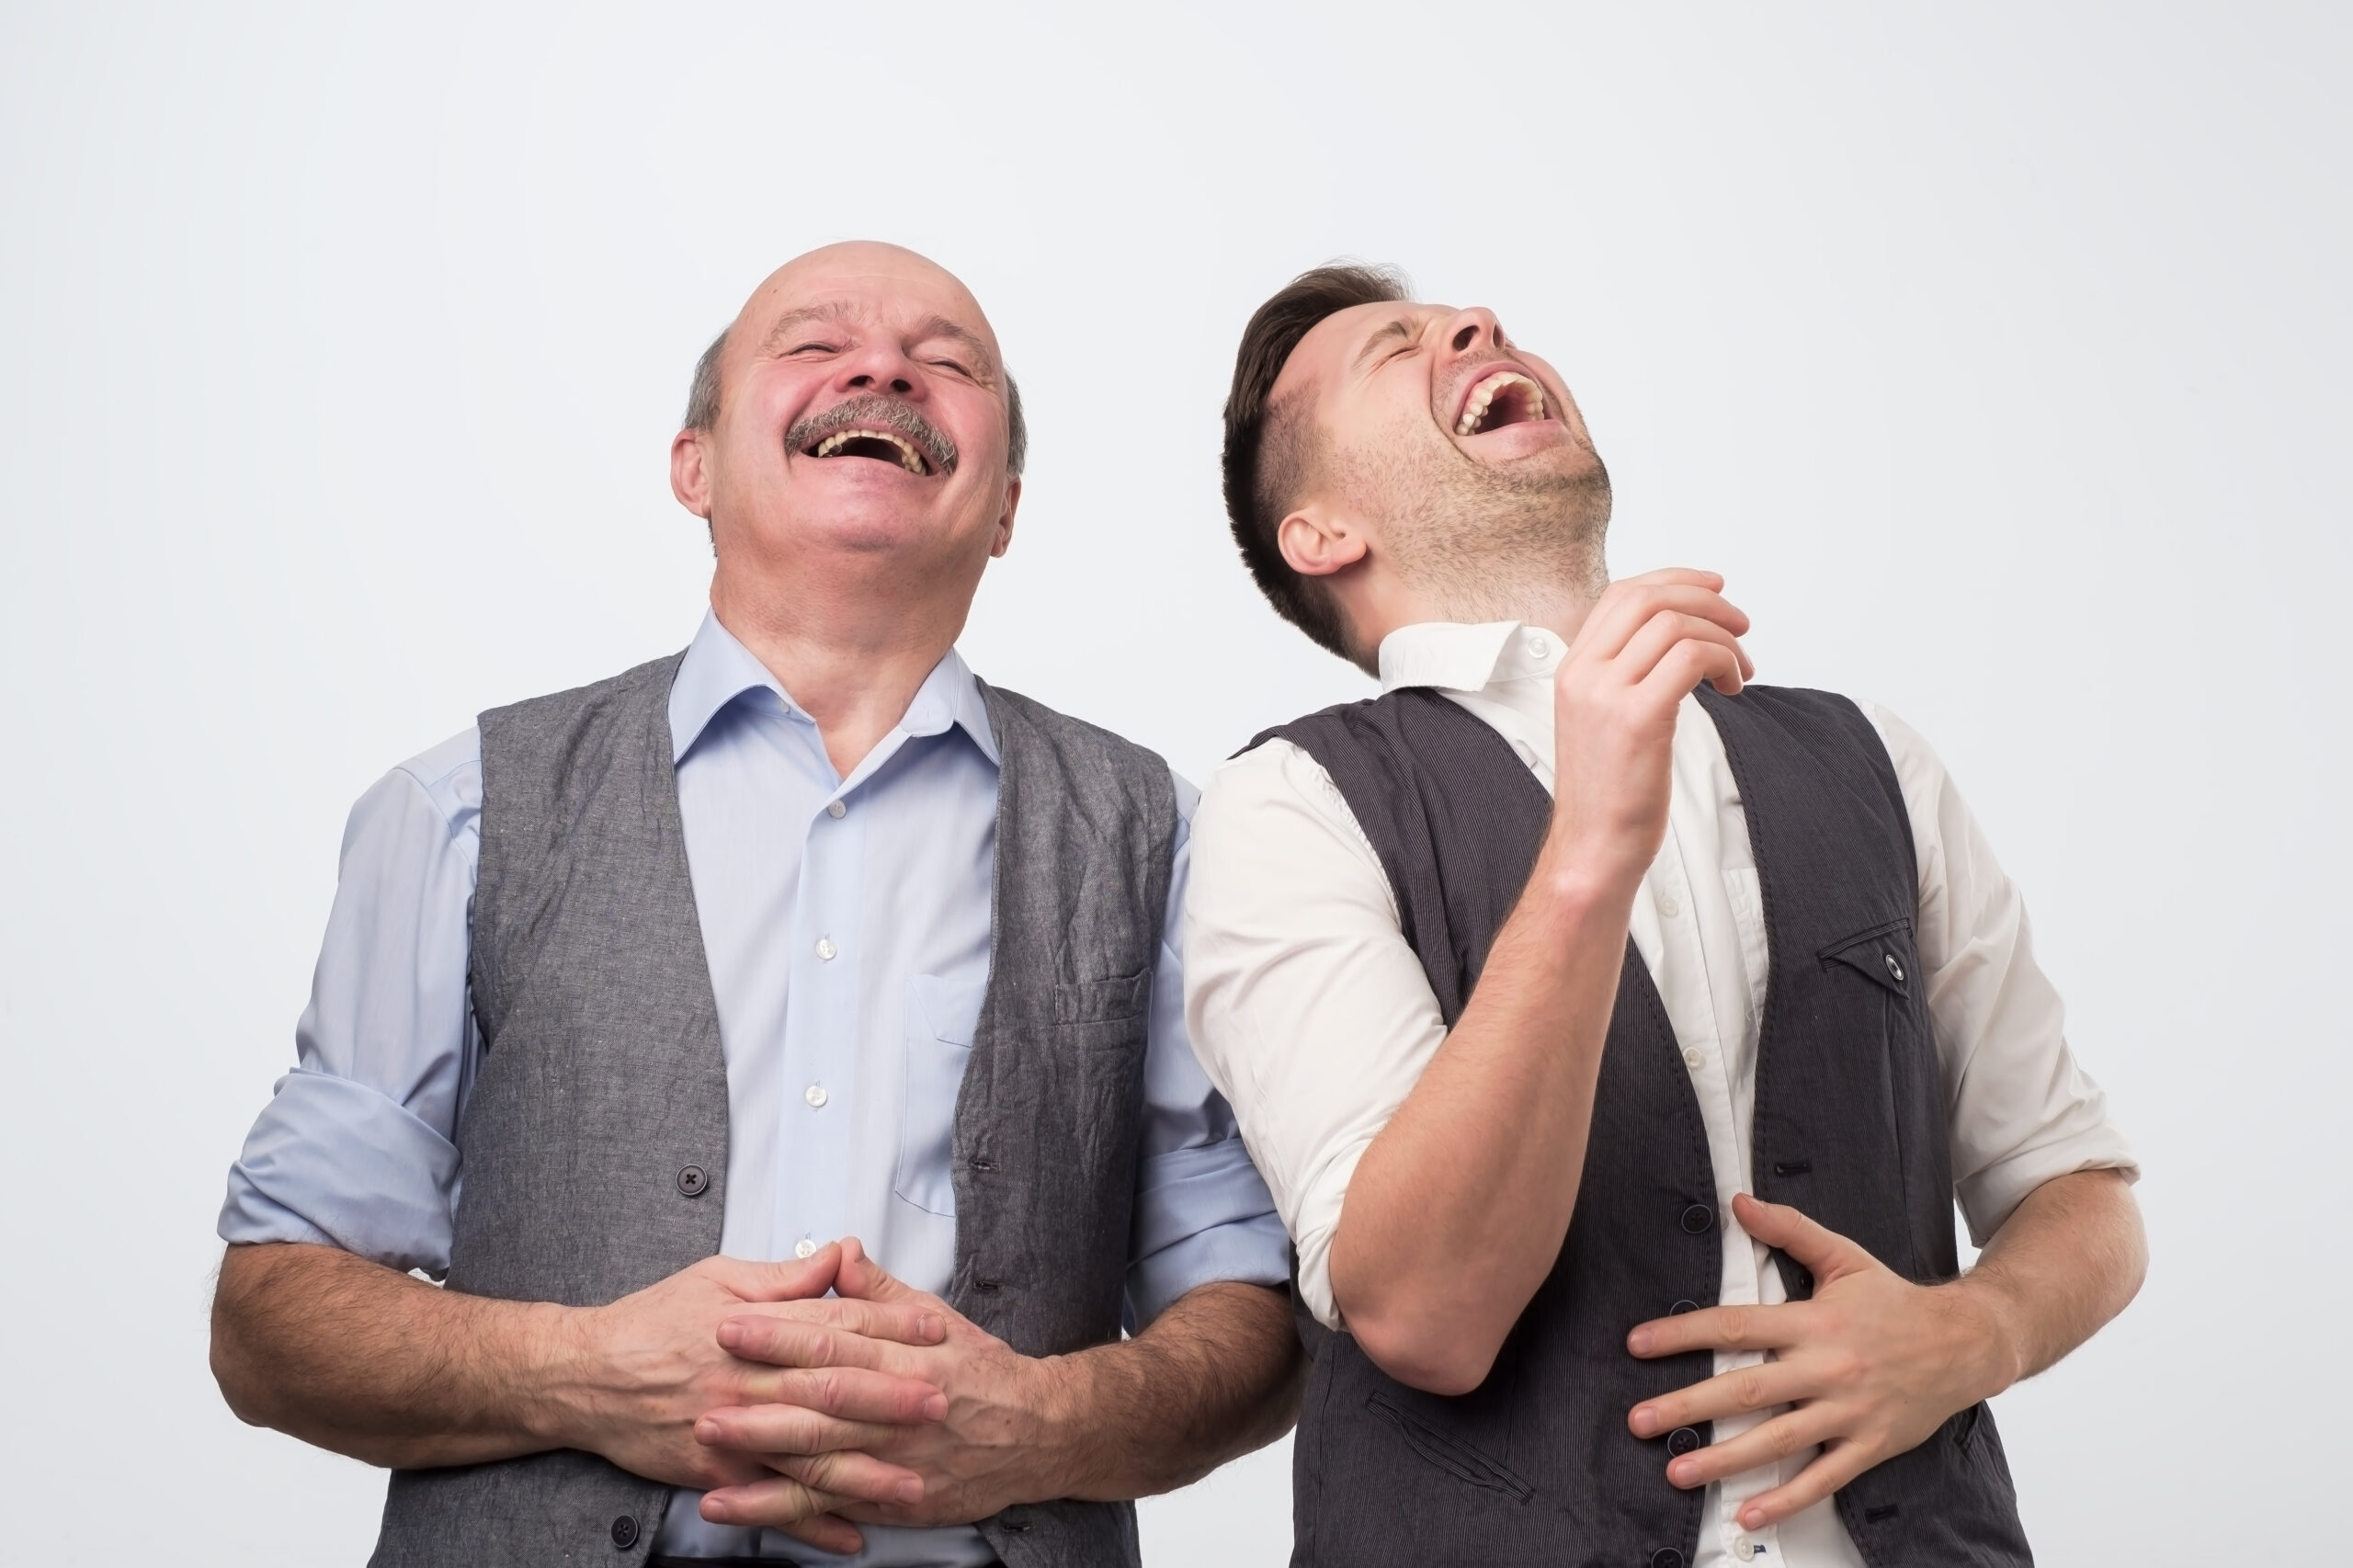 Two men laughing at a joke